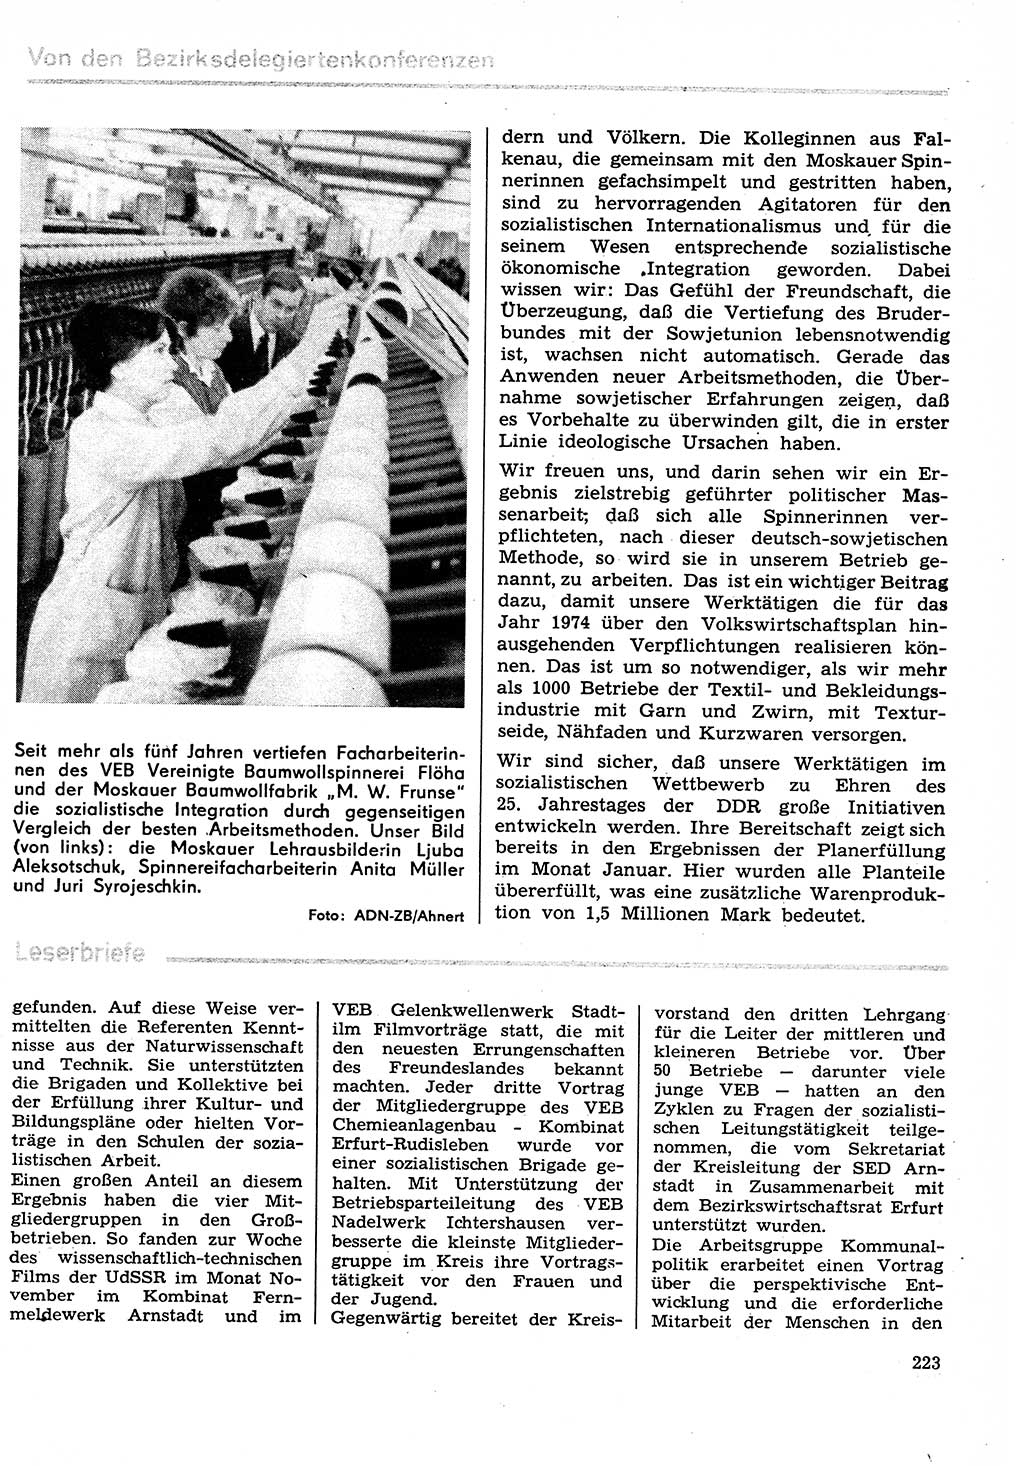 Neuer Weg (NW), Organ des Zentralkomitees (ZK) der SED (Sozialistische Einheitspartei Deutschlands) für Fragen des Parteilebens, 29. Jahrgang [Deutsche Demokratische Republik (DDR)] 1974, Seite 223 (NW ZK SED DDR 1974, S. 223)